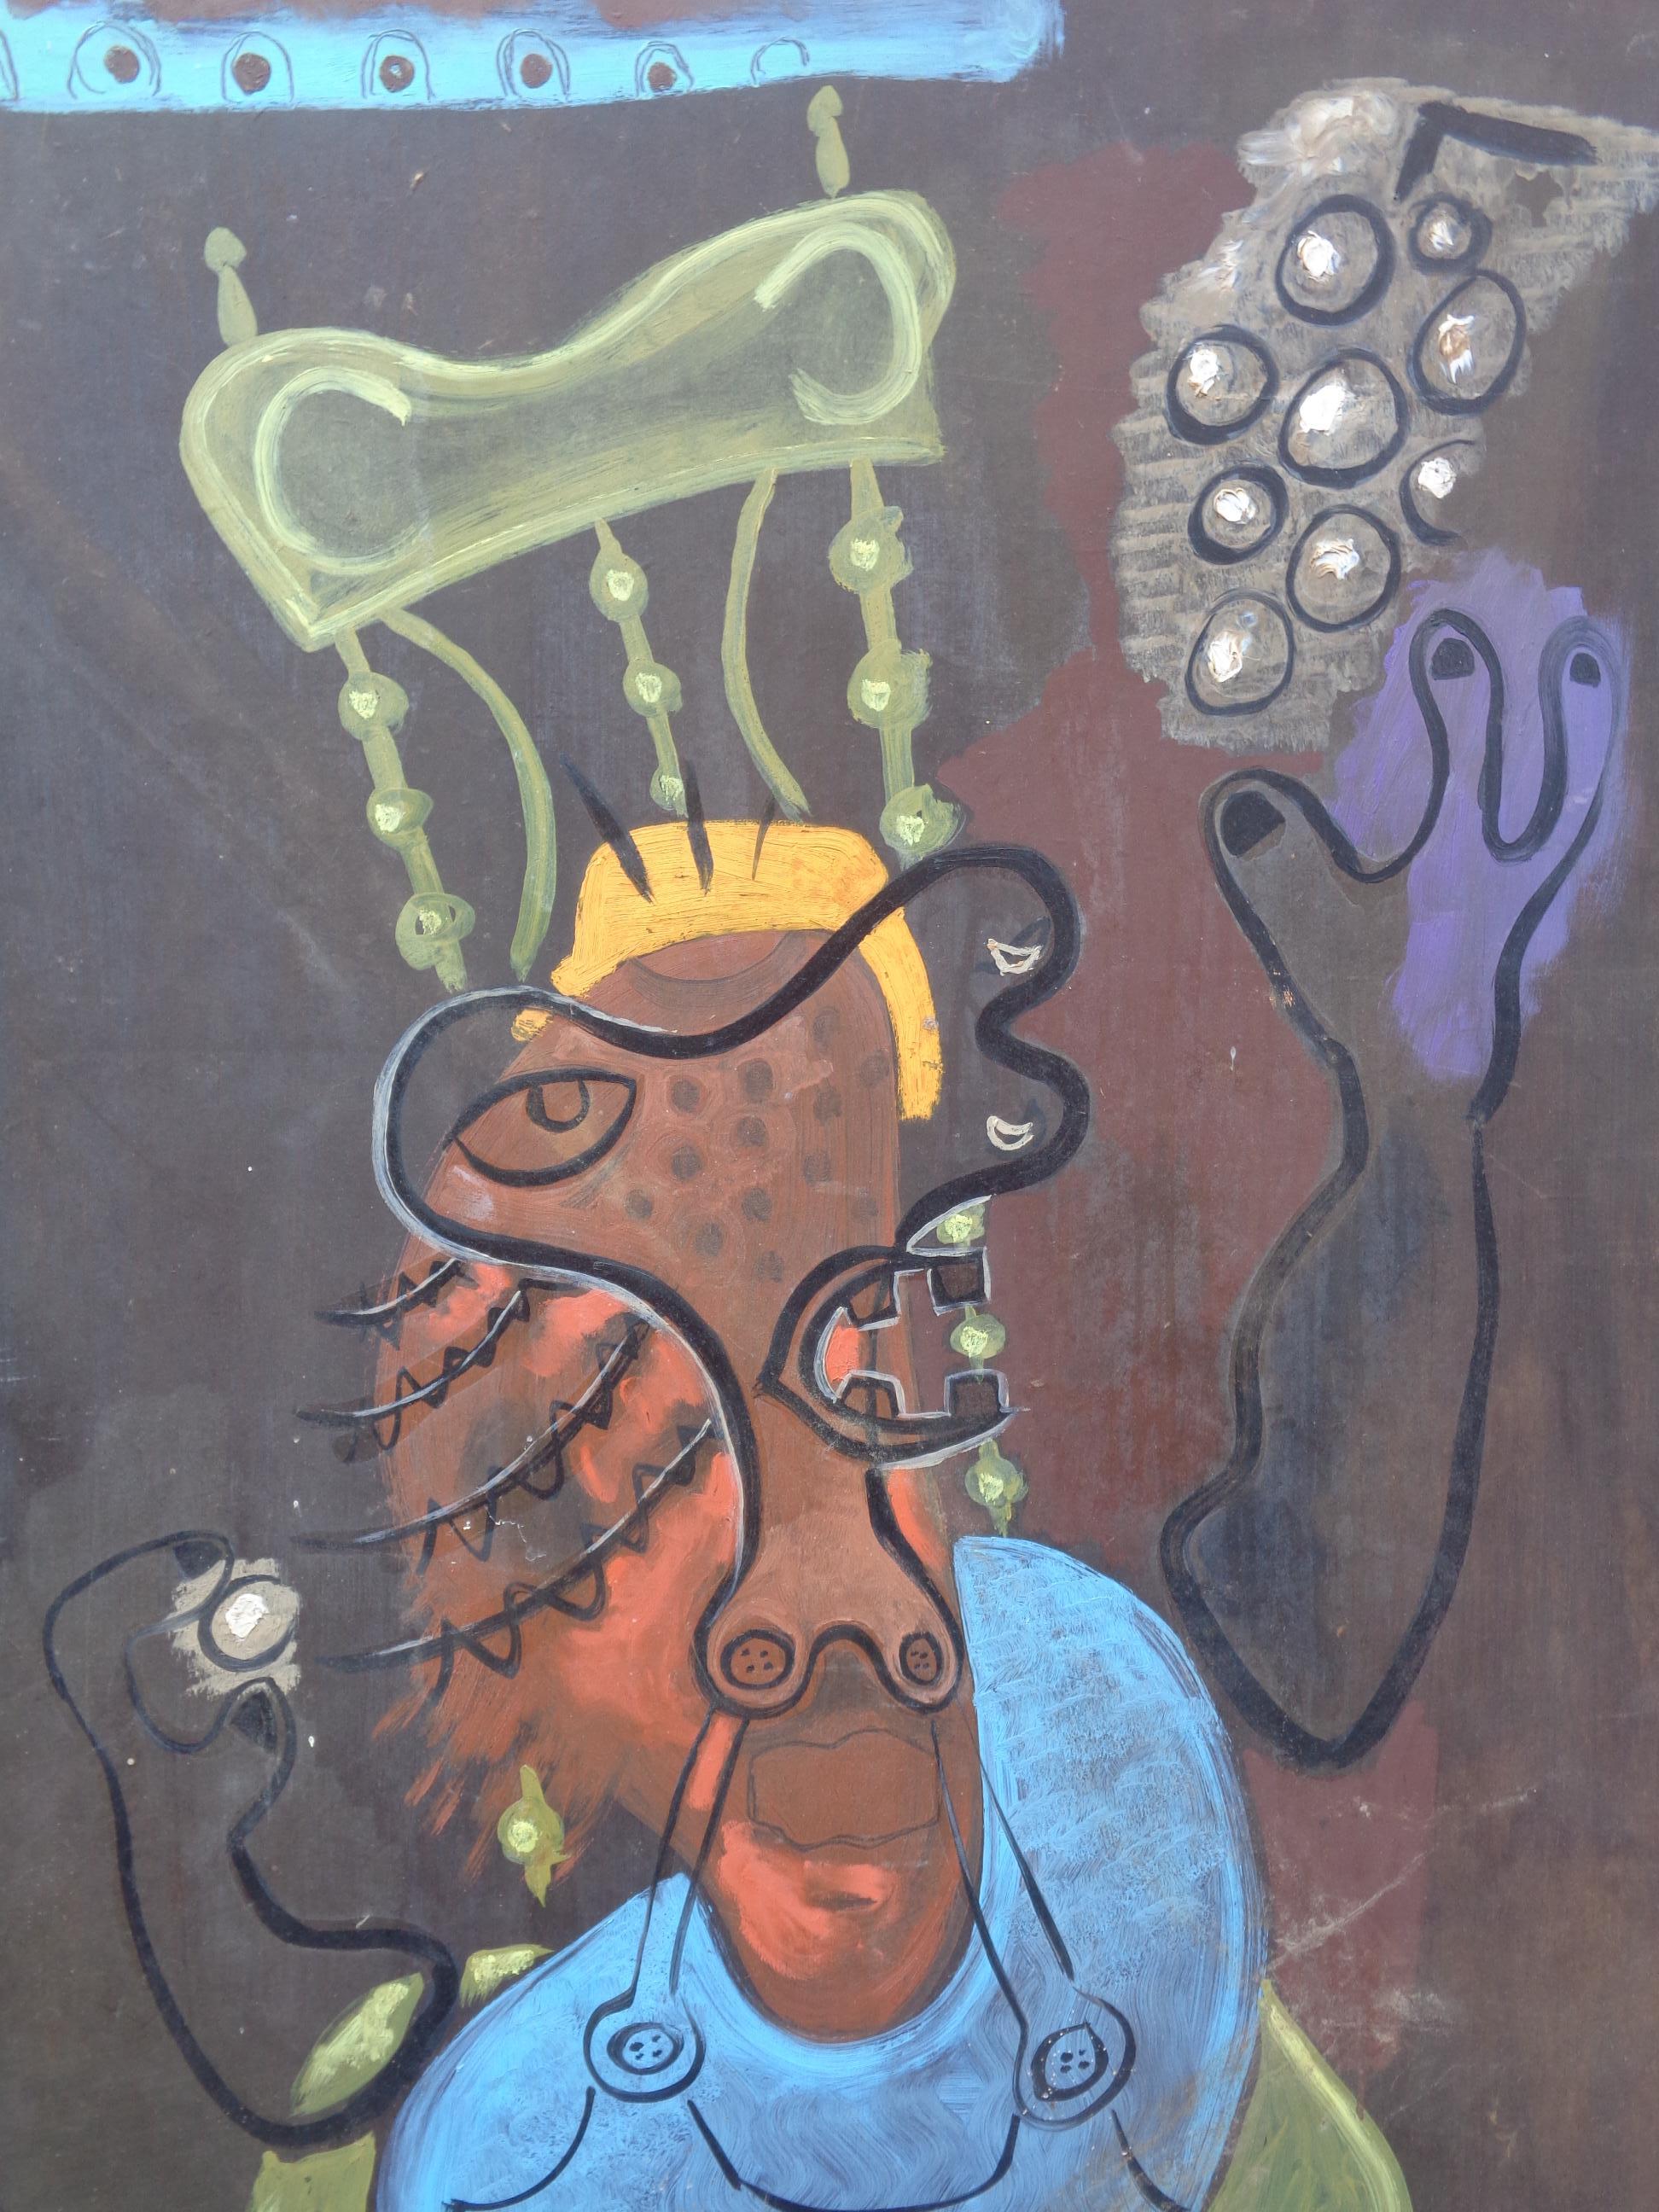 Peinture à l'huile impressionniste abstraite américaine sur maisonite par Zoute' ( né Leon Salter, 1903 - 1976 / North Rose, NY ) un portrait de sa femme bien-aimée Thelma assise sur une chaise à dossier haut avec une main levée tenant une grappe de